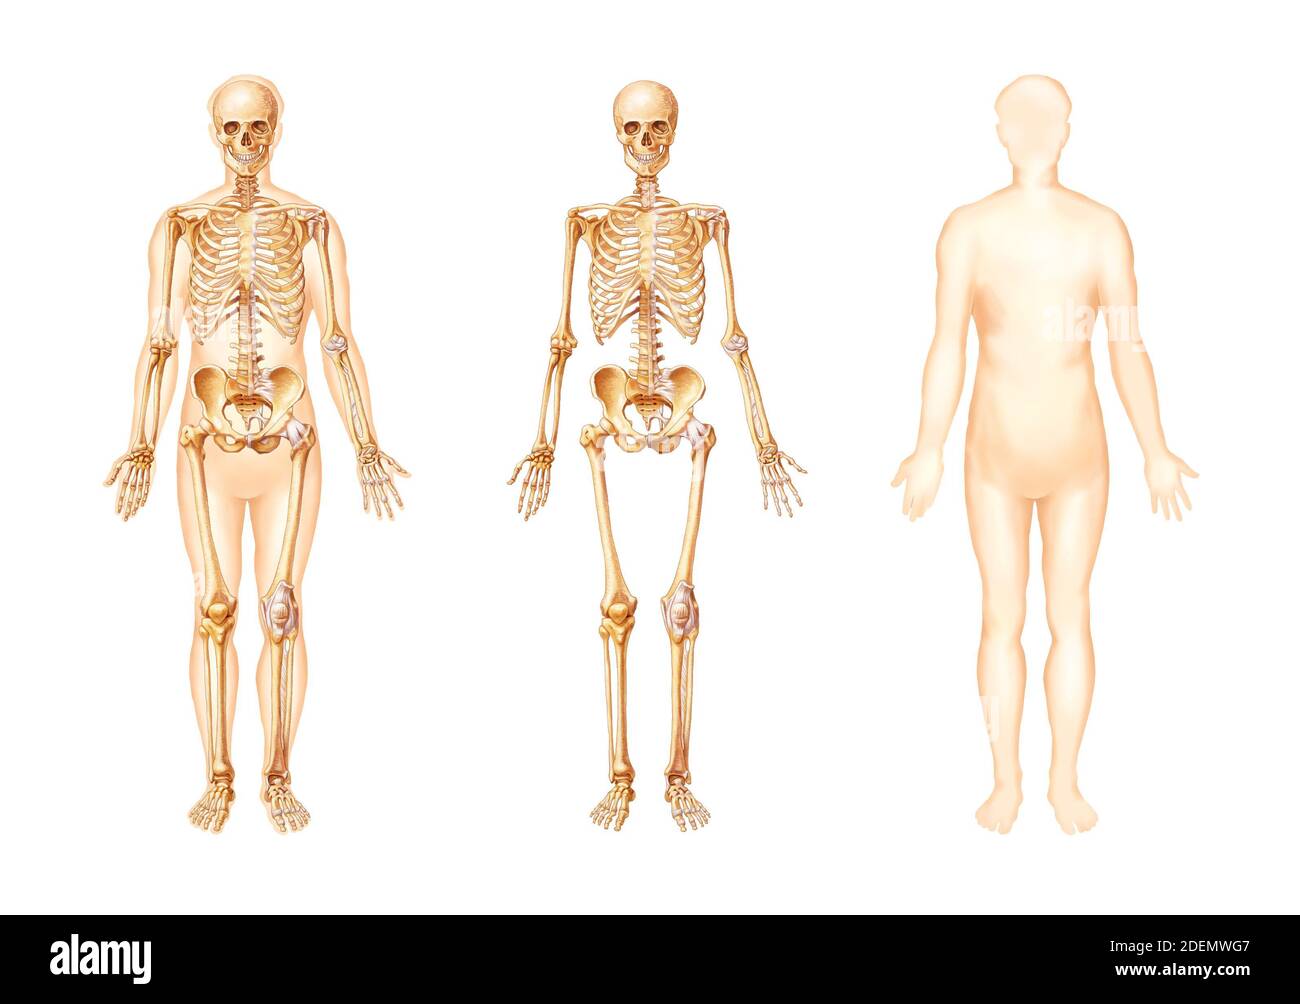 illustrazione anatomica ossea del corpo umano Foto Stock